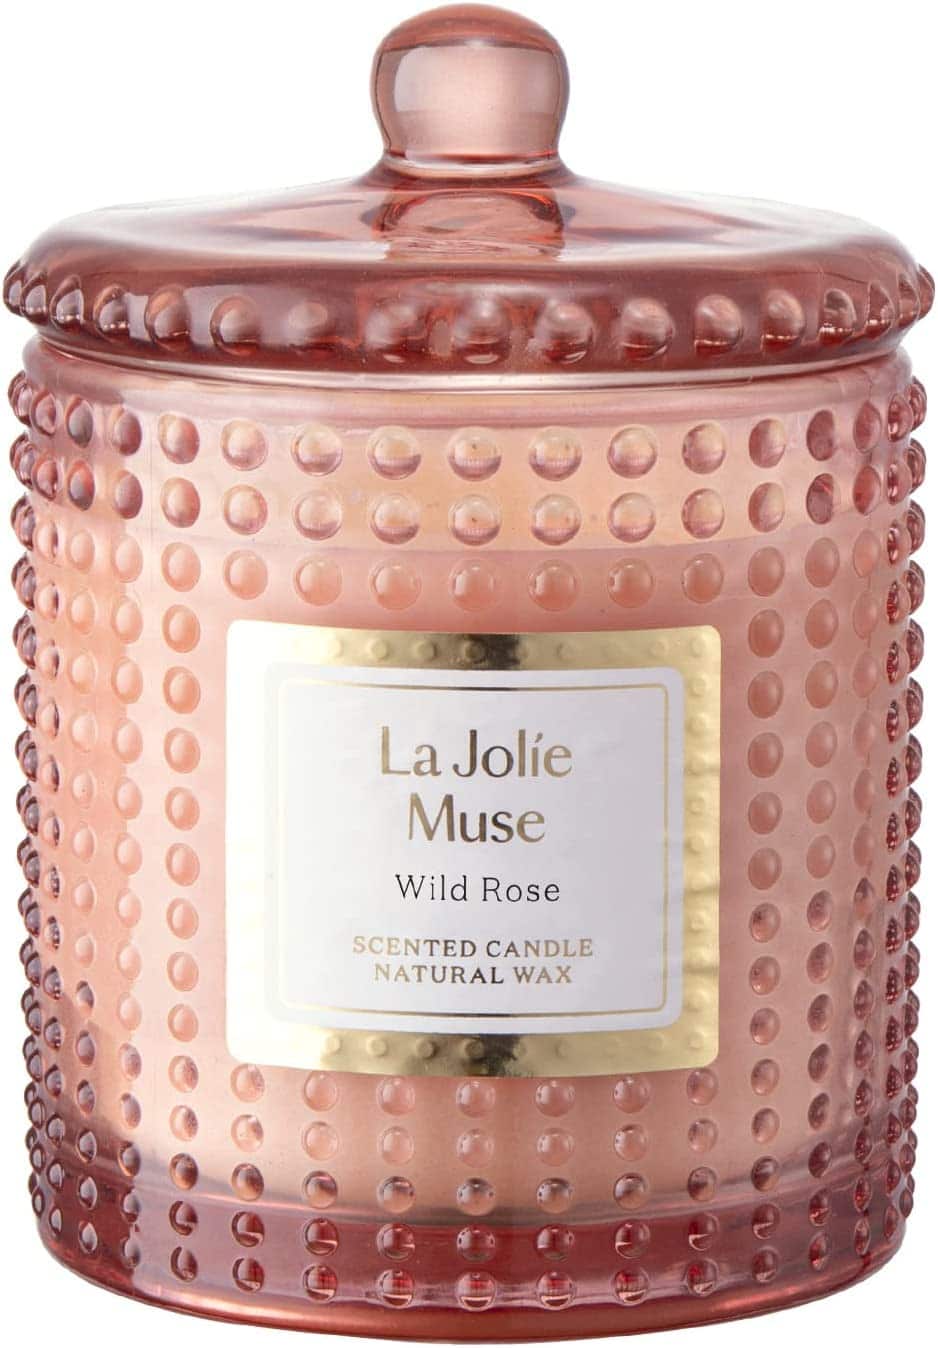 La Jolie Muse Candle 